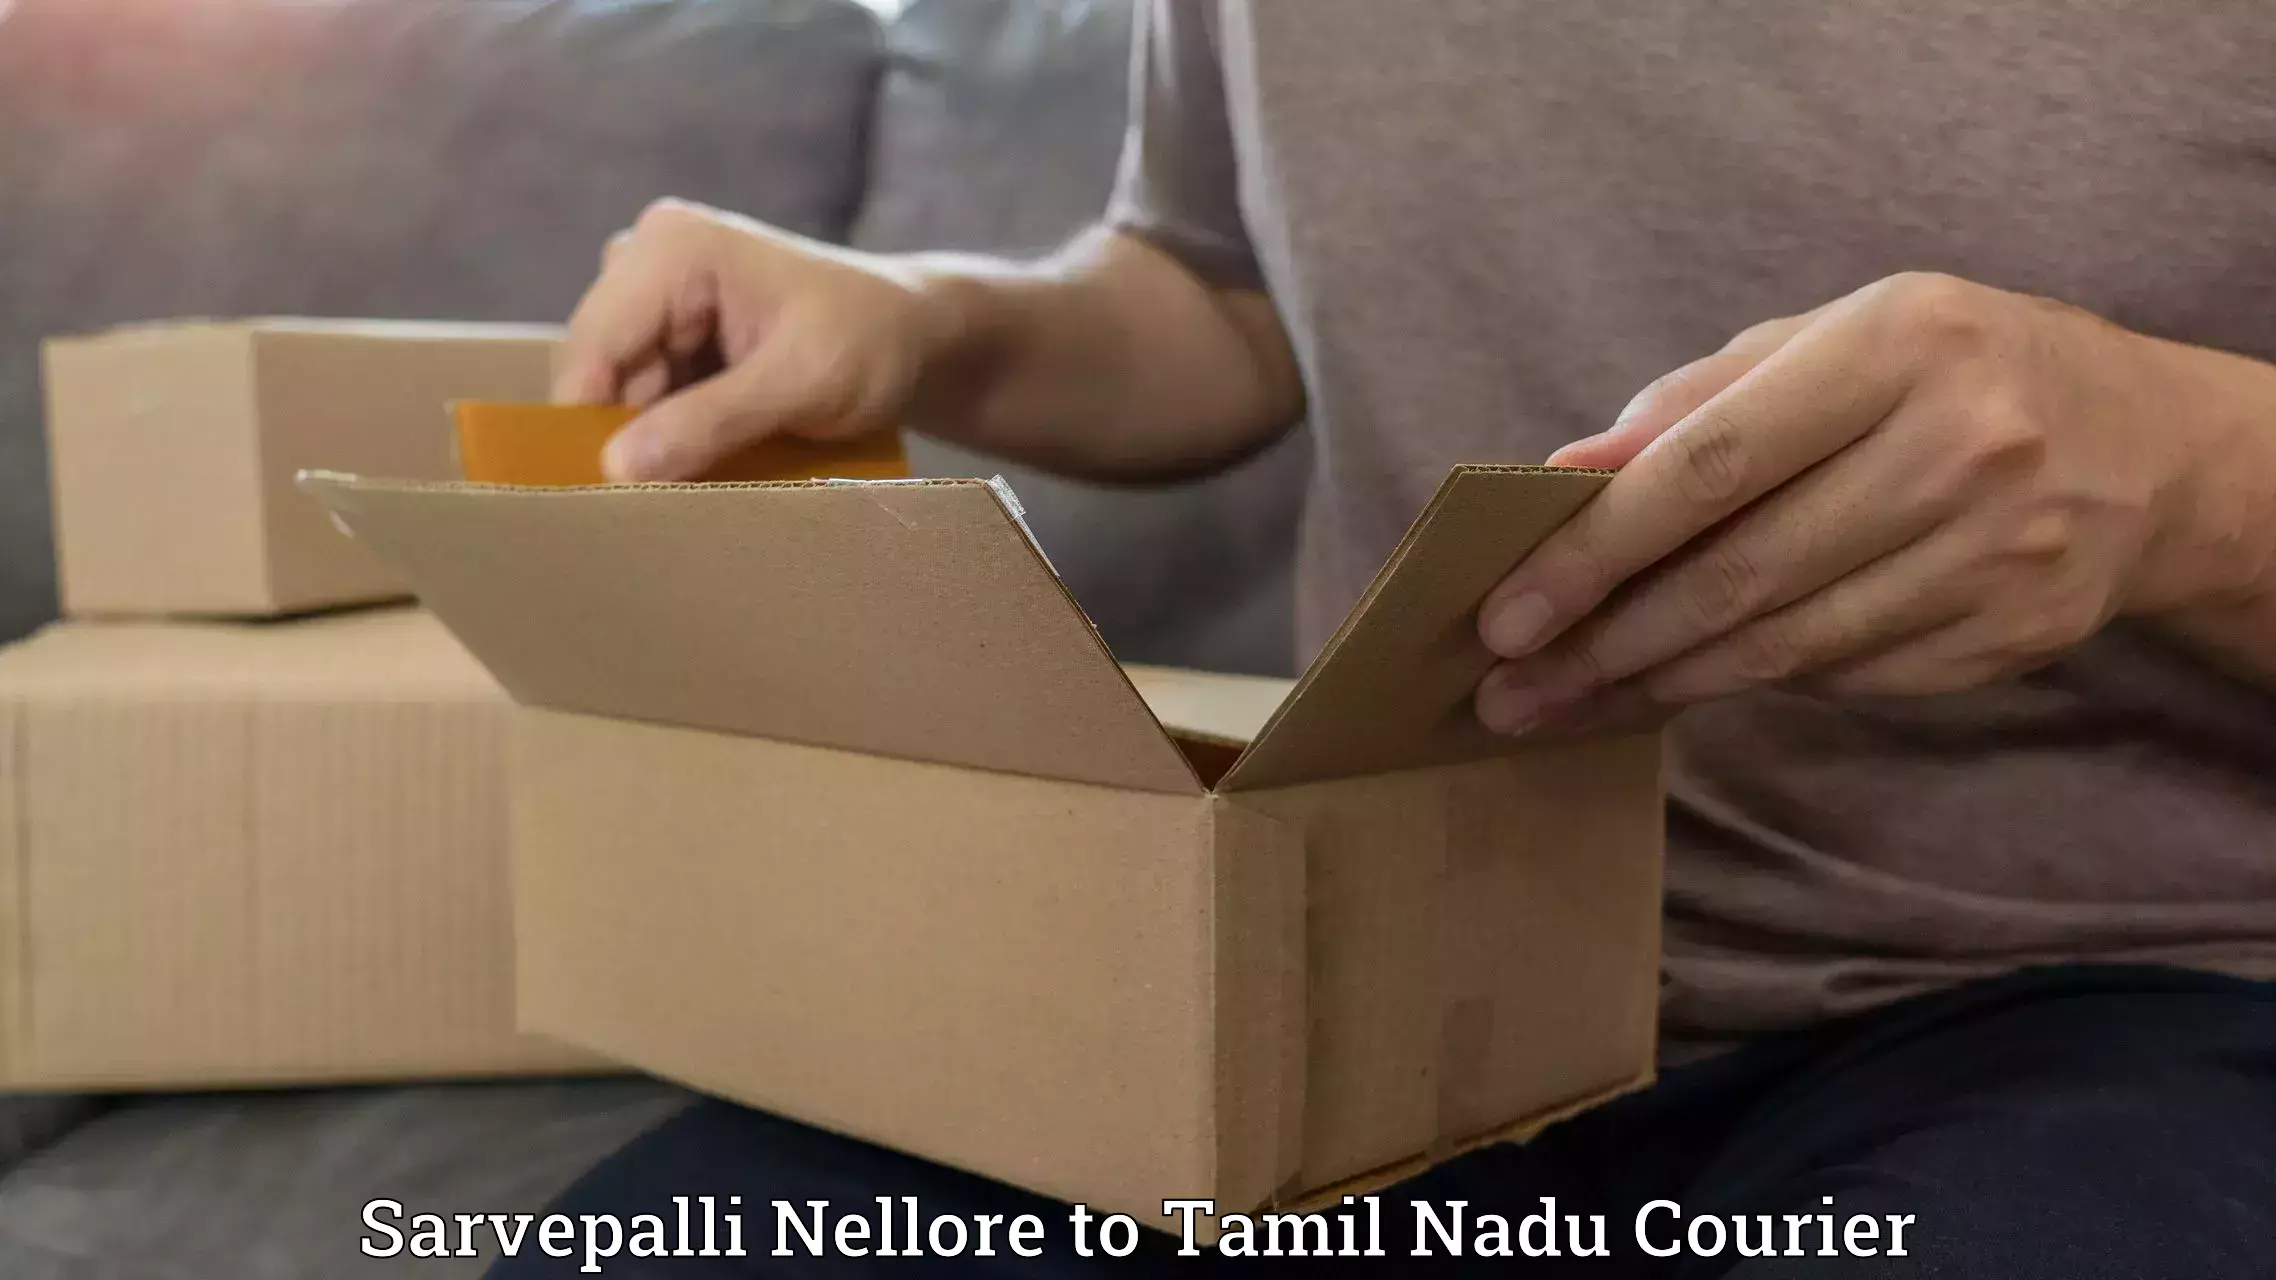 Overnight delivery services Sarvepalli Nellore to Tamil Nadu